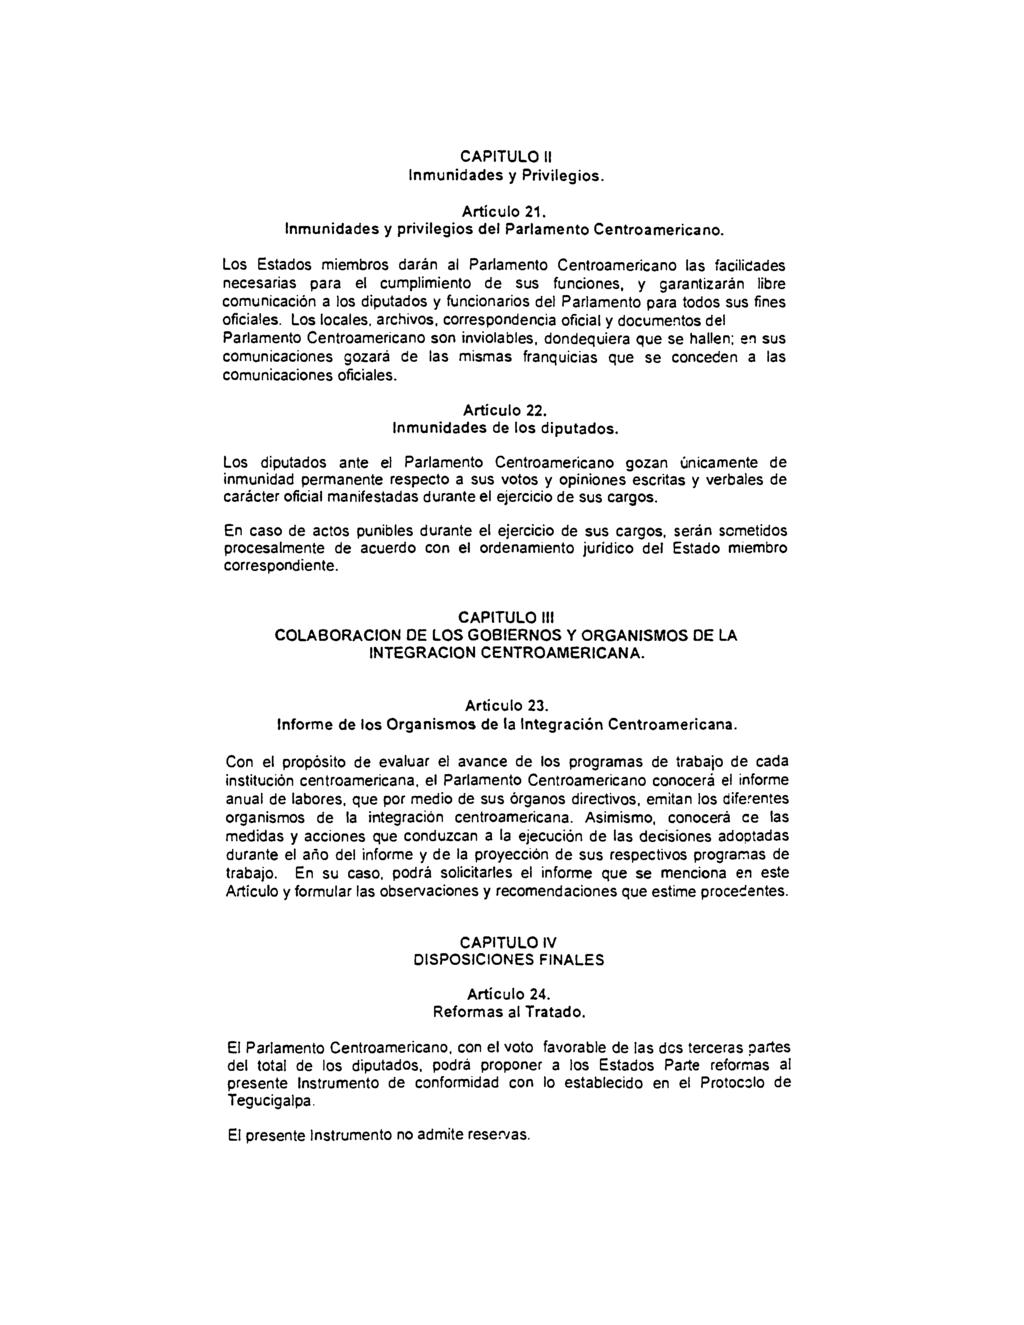 CAPITULO II Inmunidades y Privilegios. Artículo 21. Inmunidades y privilegios del Parlamento Centroamericano.